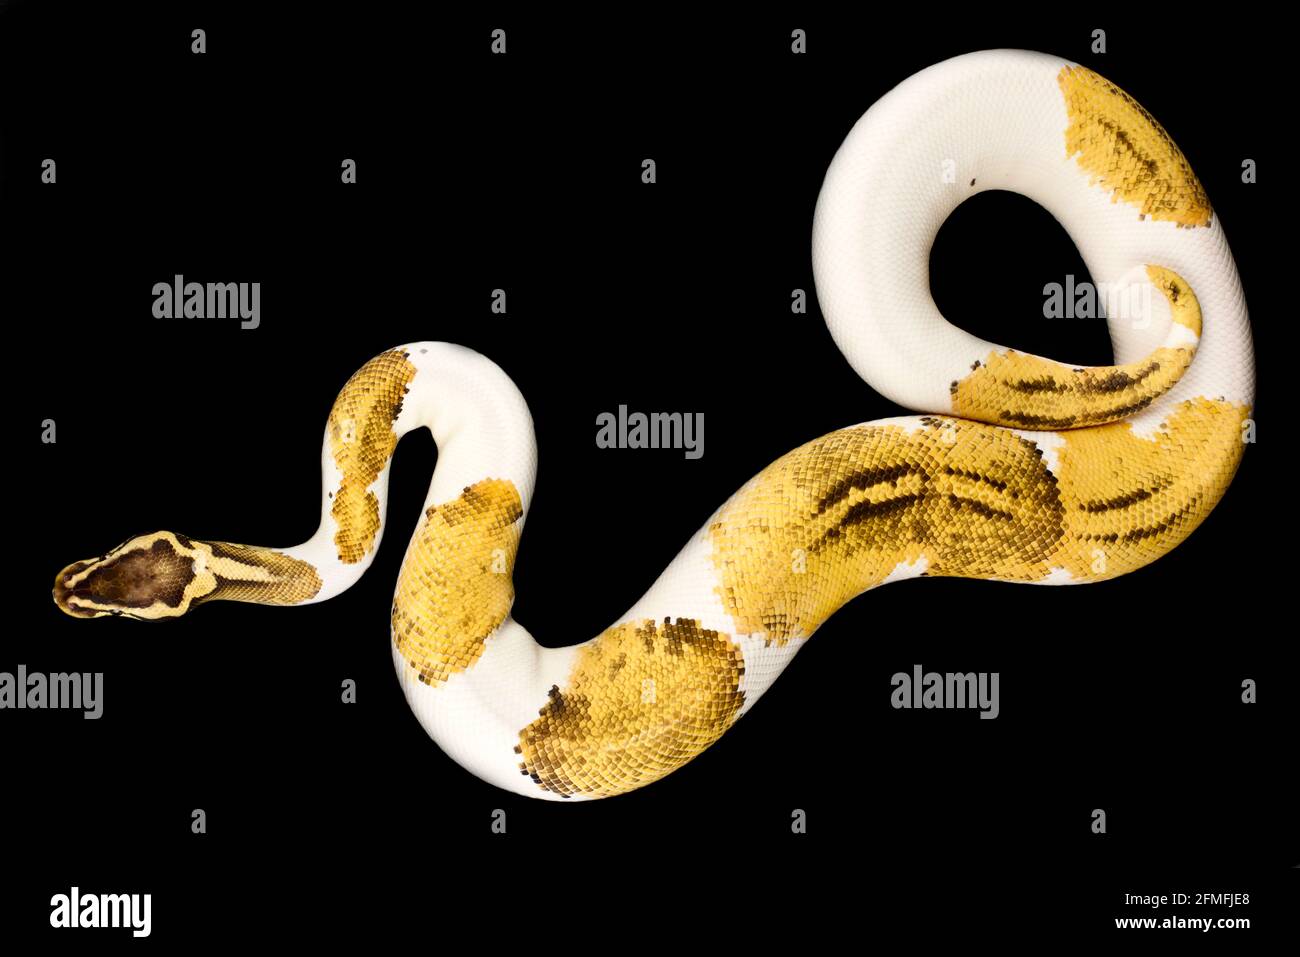 Le python de balle (Python regius) est l'une des espèces de serpents d'animaux de compagnie les plus populaires au monde. Ils sont élevés dans une grande variété de couleurs. Banque D'Images